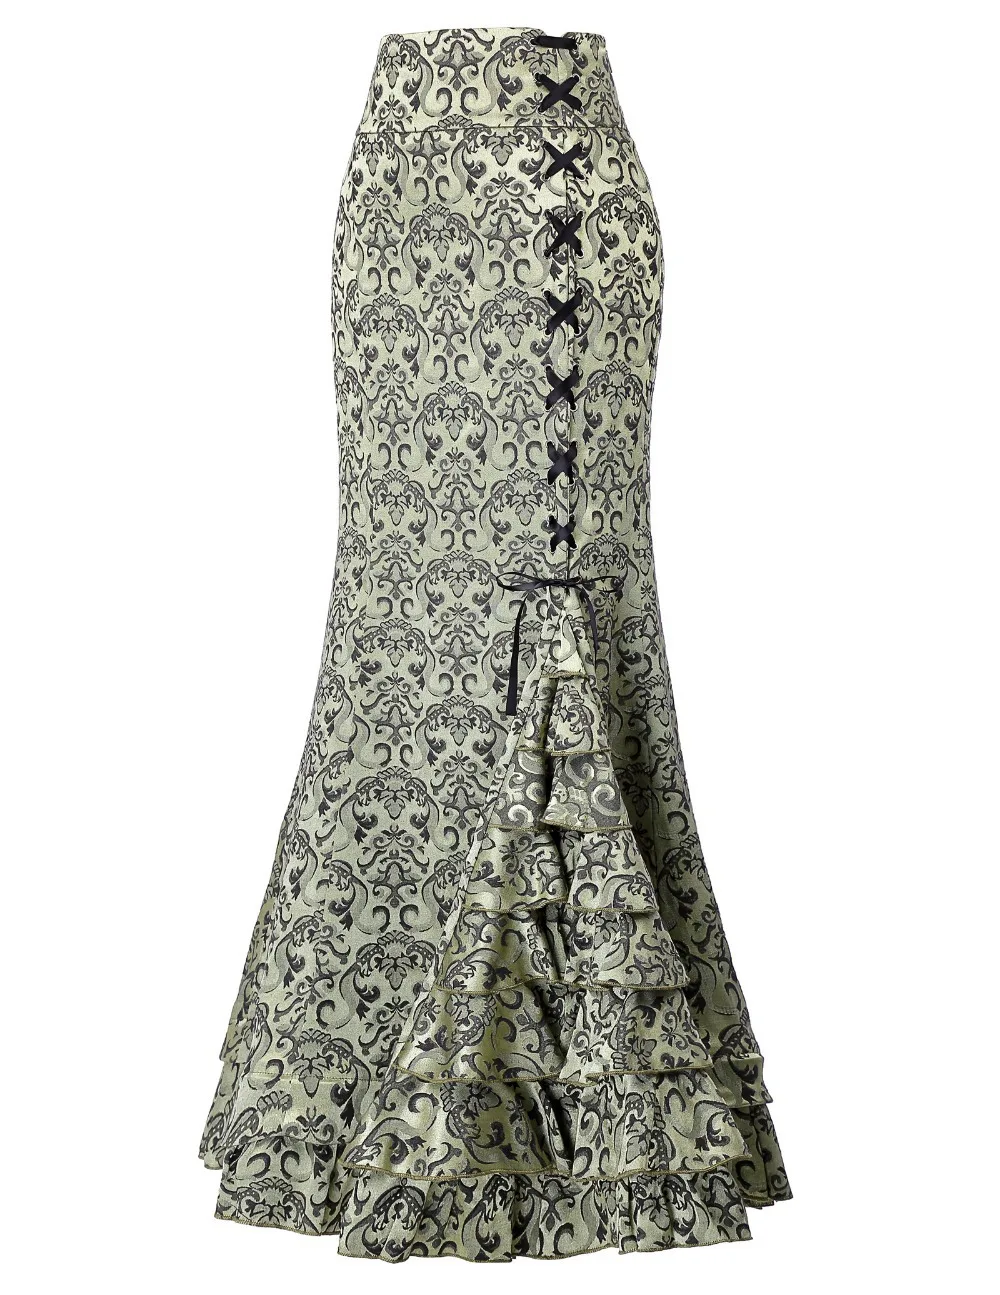 Винтажная юбка макси с цветочным рисунком для женщин, кружевная юбка русалки с оборками, королевская многослойная юбка, юбка с цветочным принтом, жаккардовая переплетенная юбка